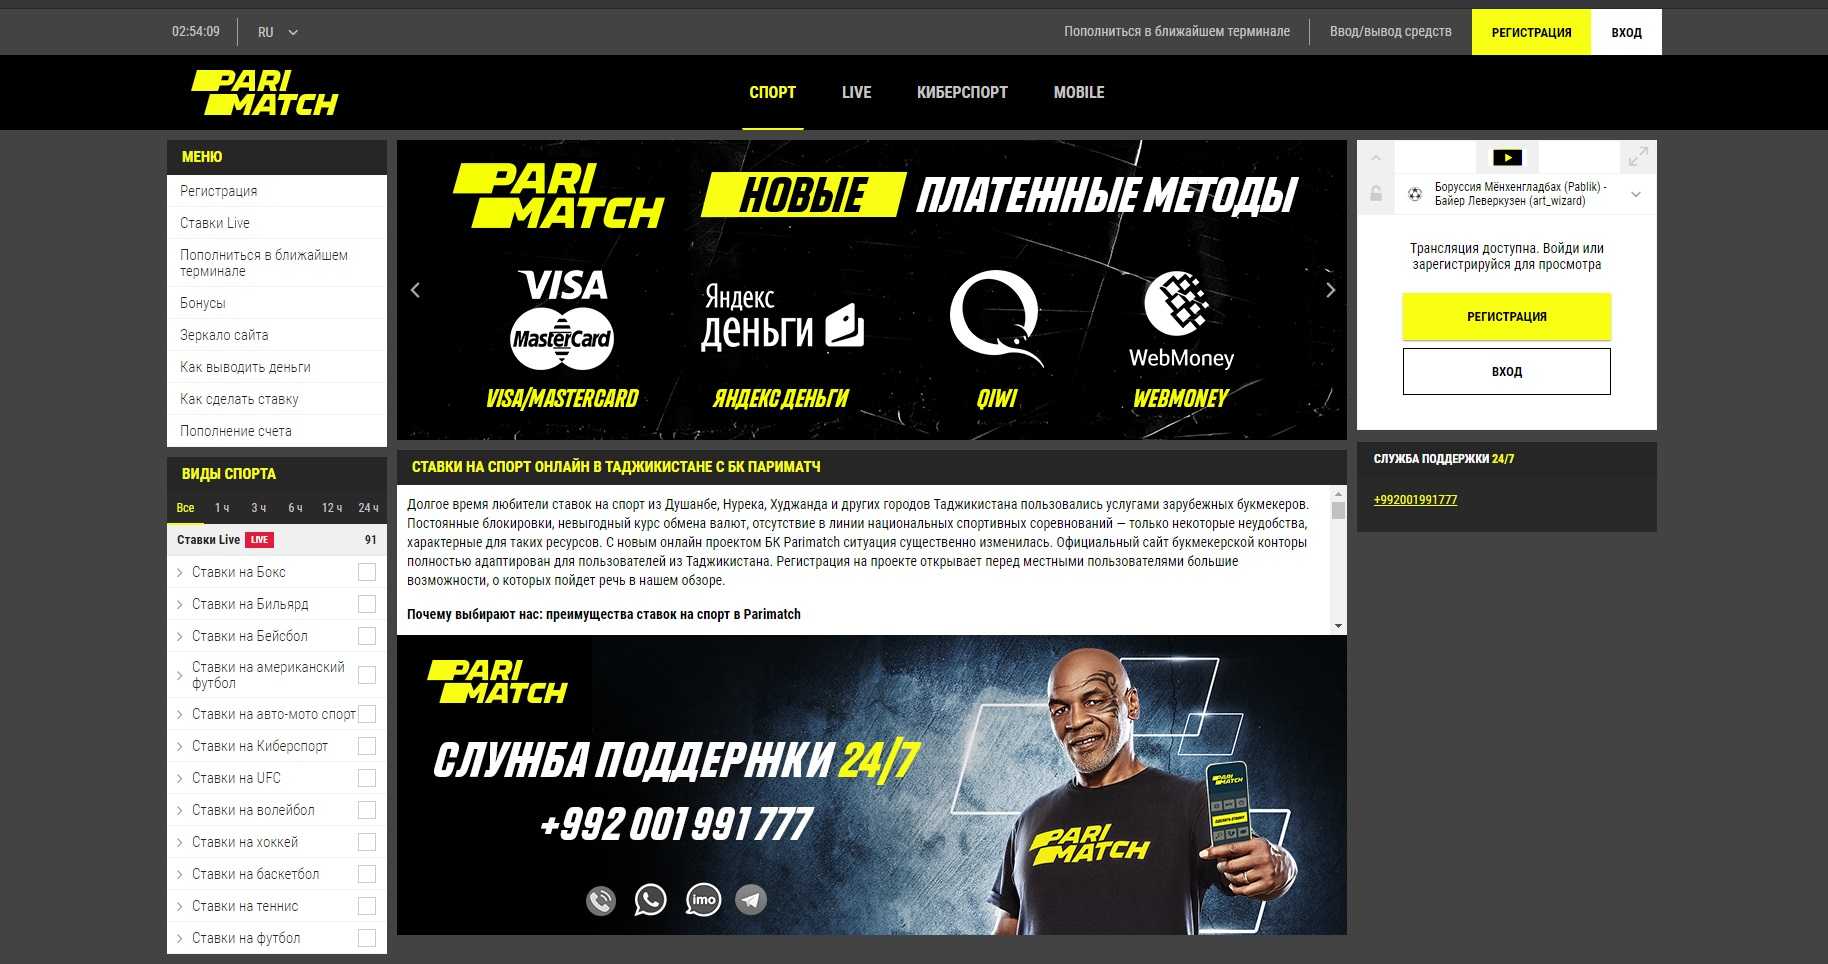 Ставки на спорт линия biznes zarabotok ru скачать бесплатно приложение казино х